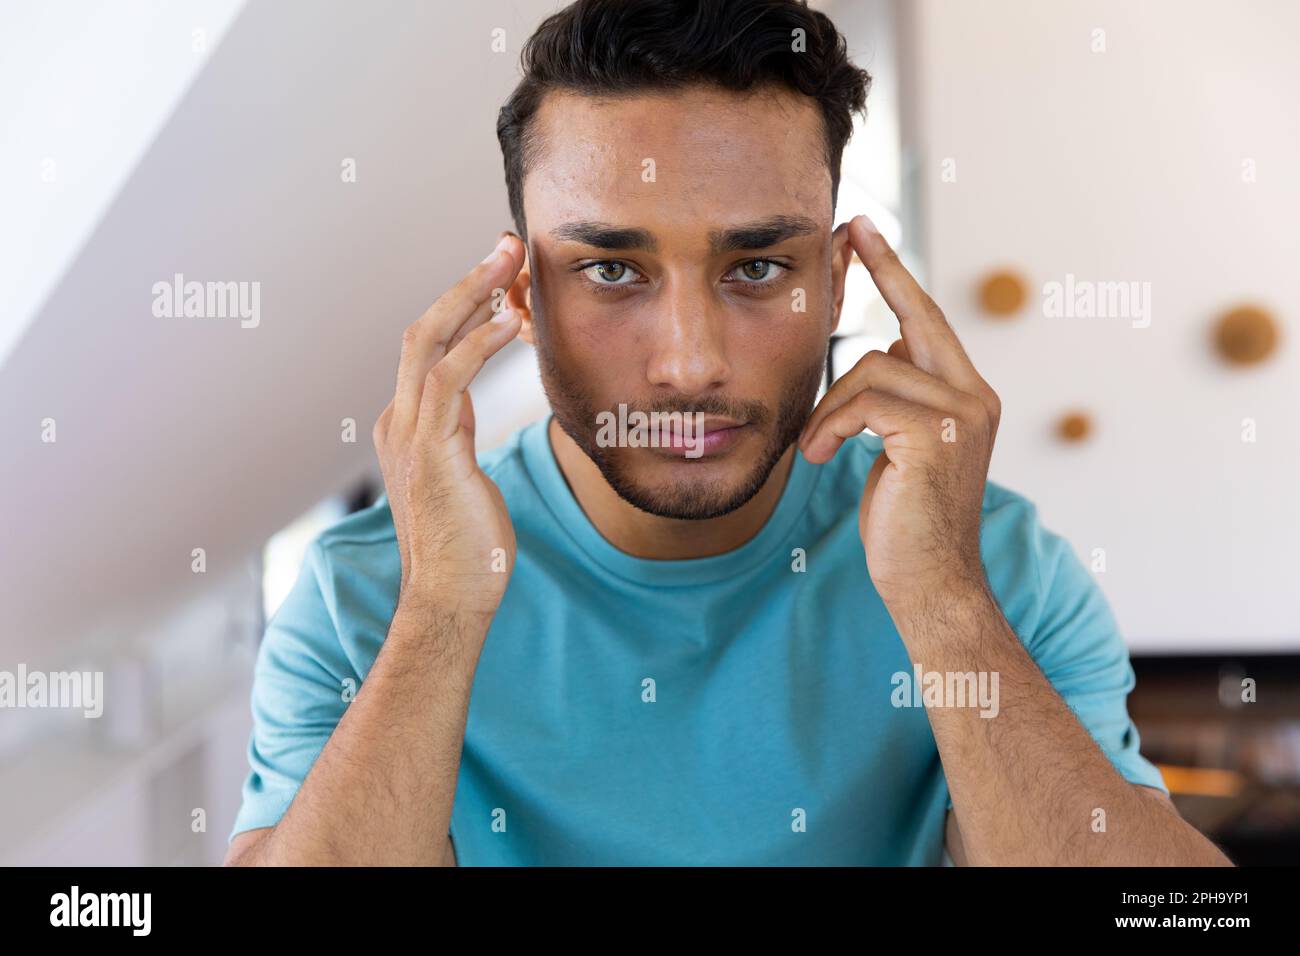 Homme biracial touchant son visage, regardant dans le miroir de salle de bains Banque D'Images